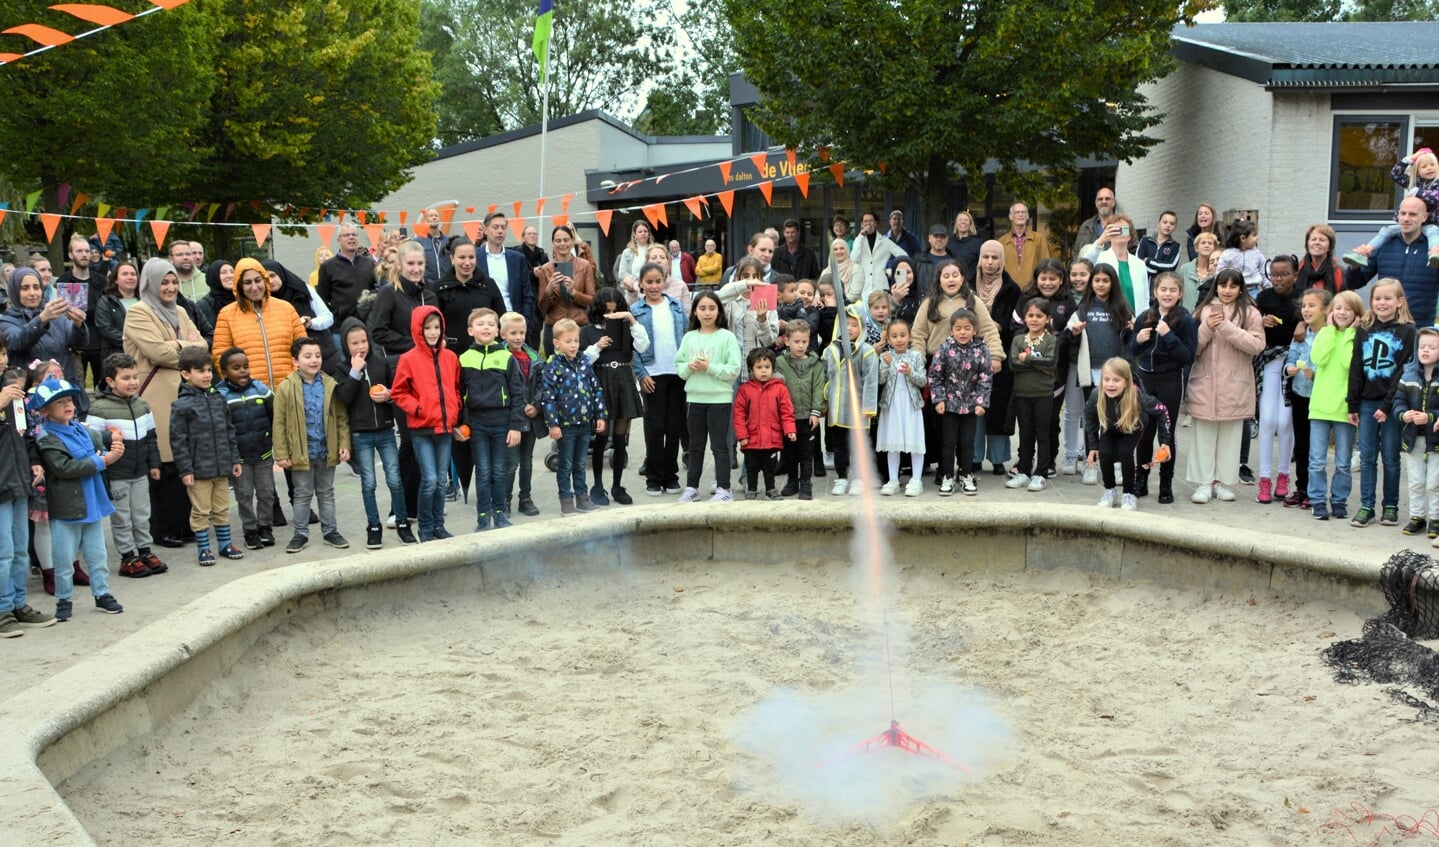 In oktober 2021 werd de fusieschool De Vliegeniers officieel geopend.